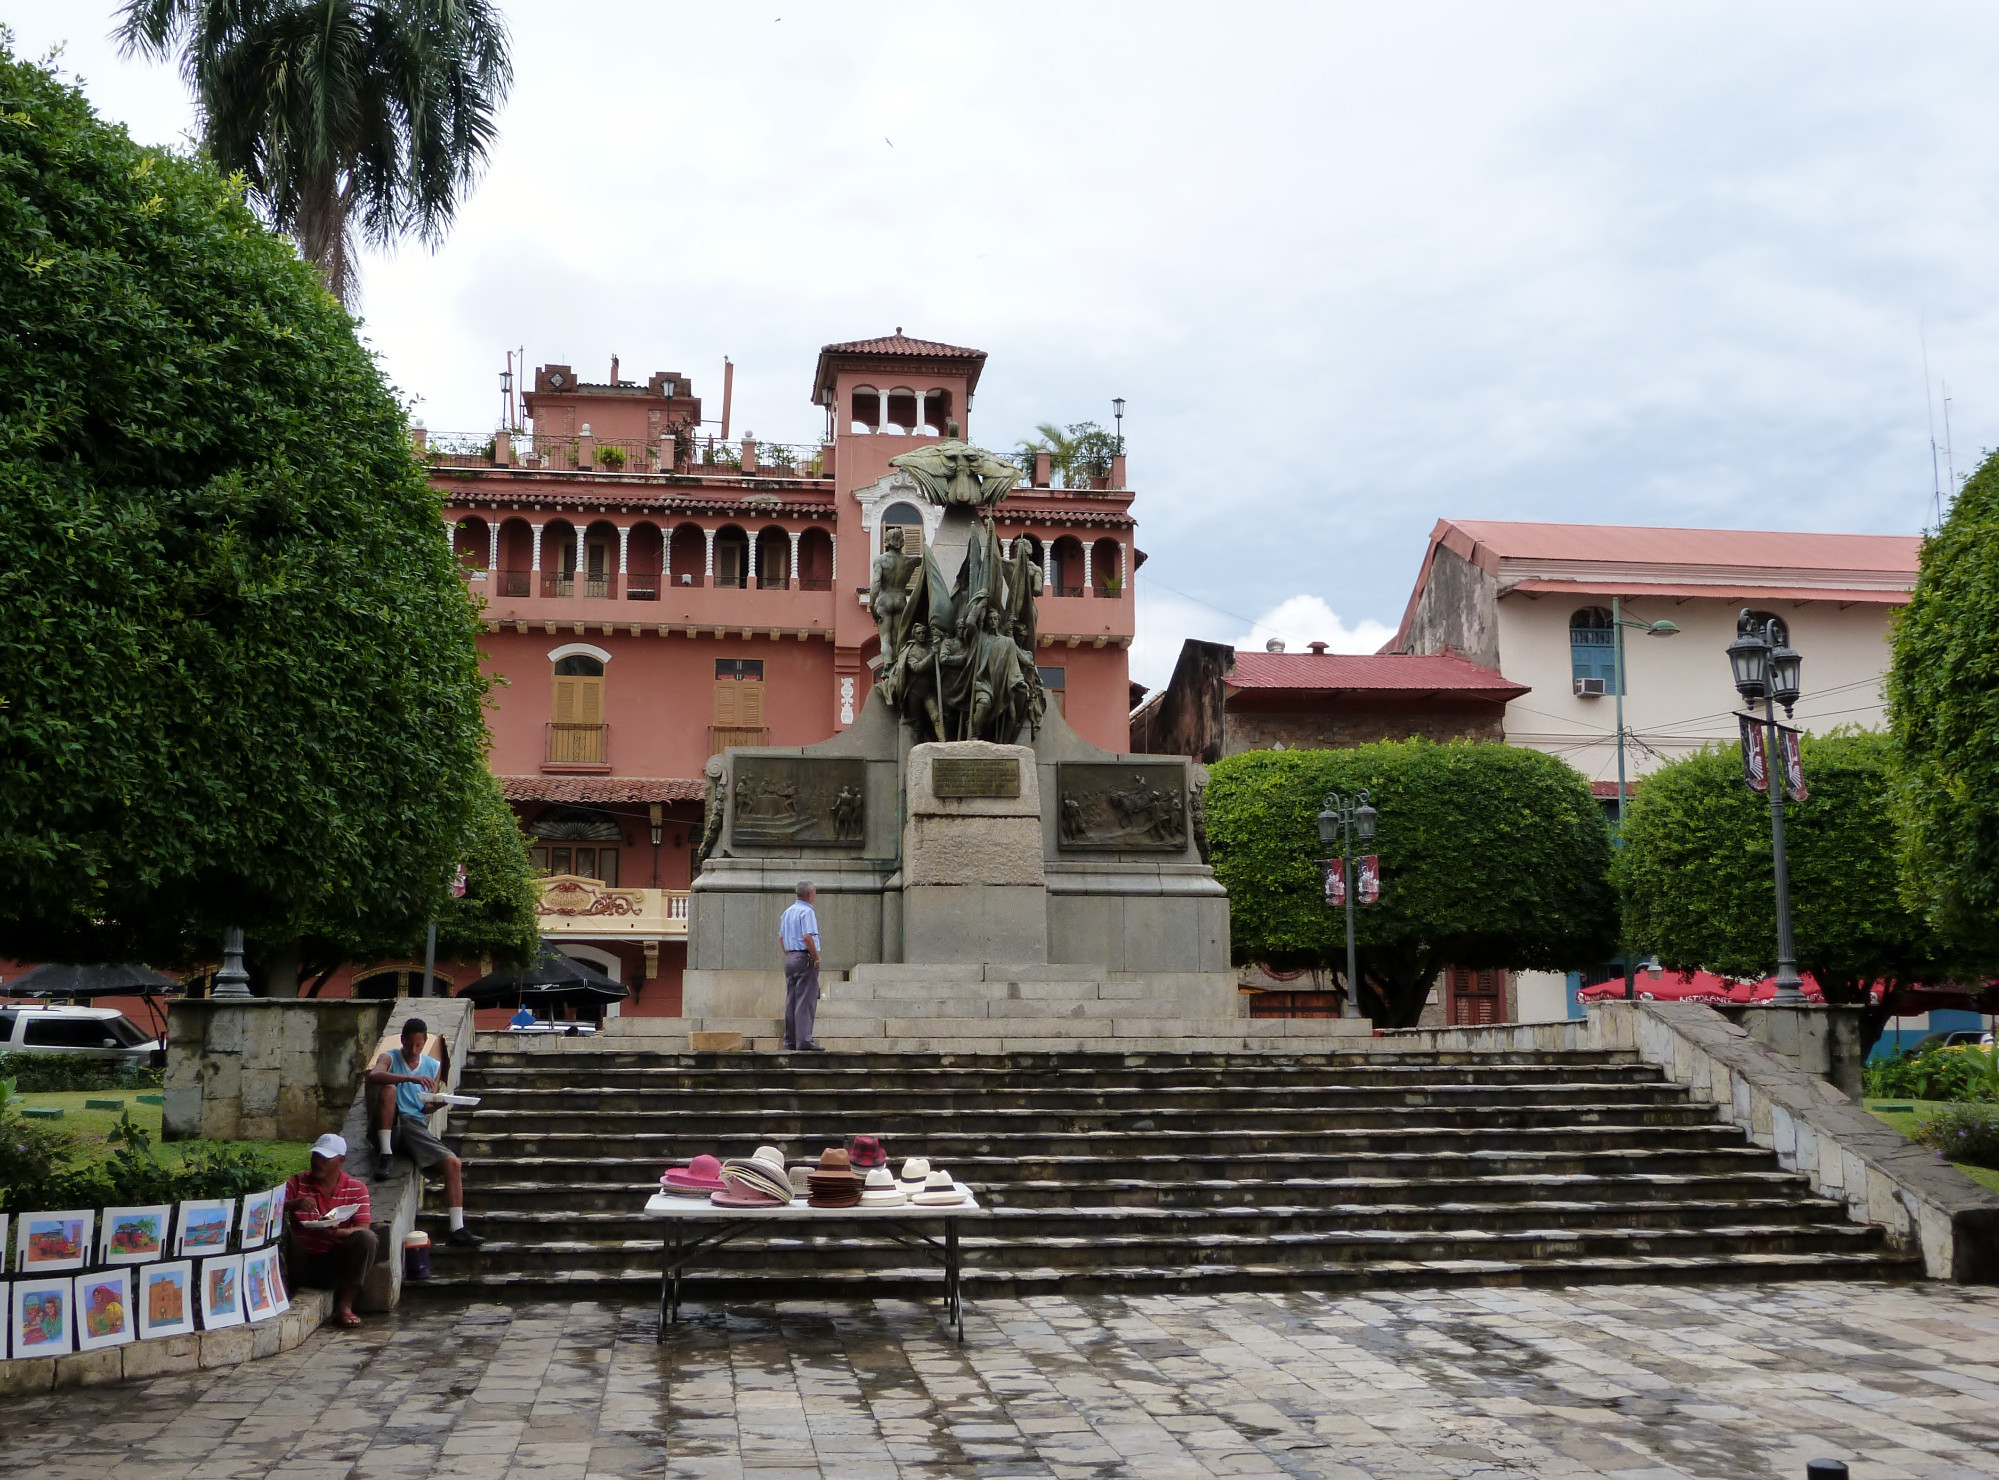 Plaza Simón Bolívar, Panama